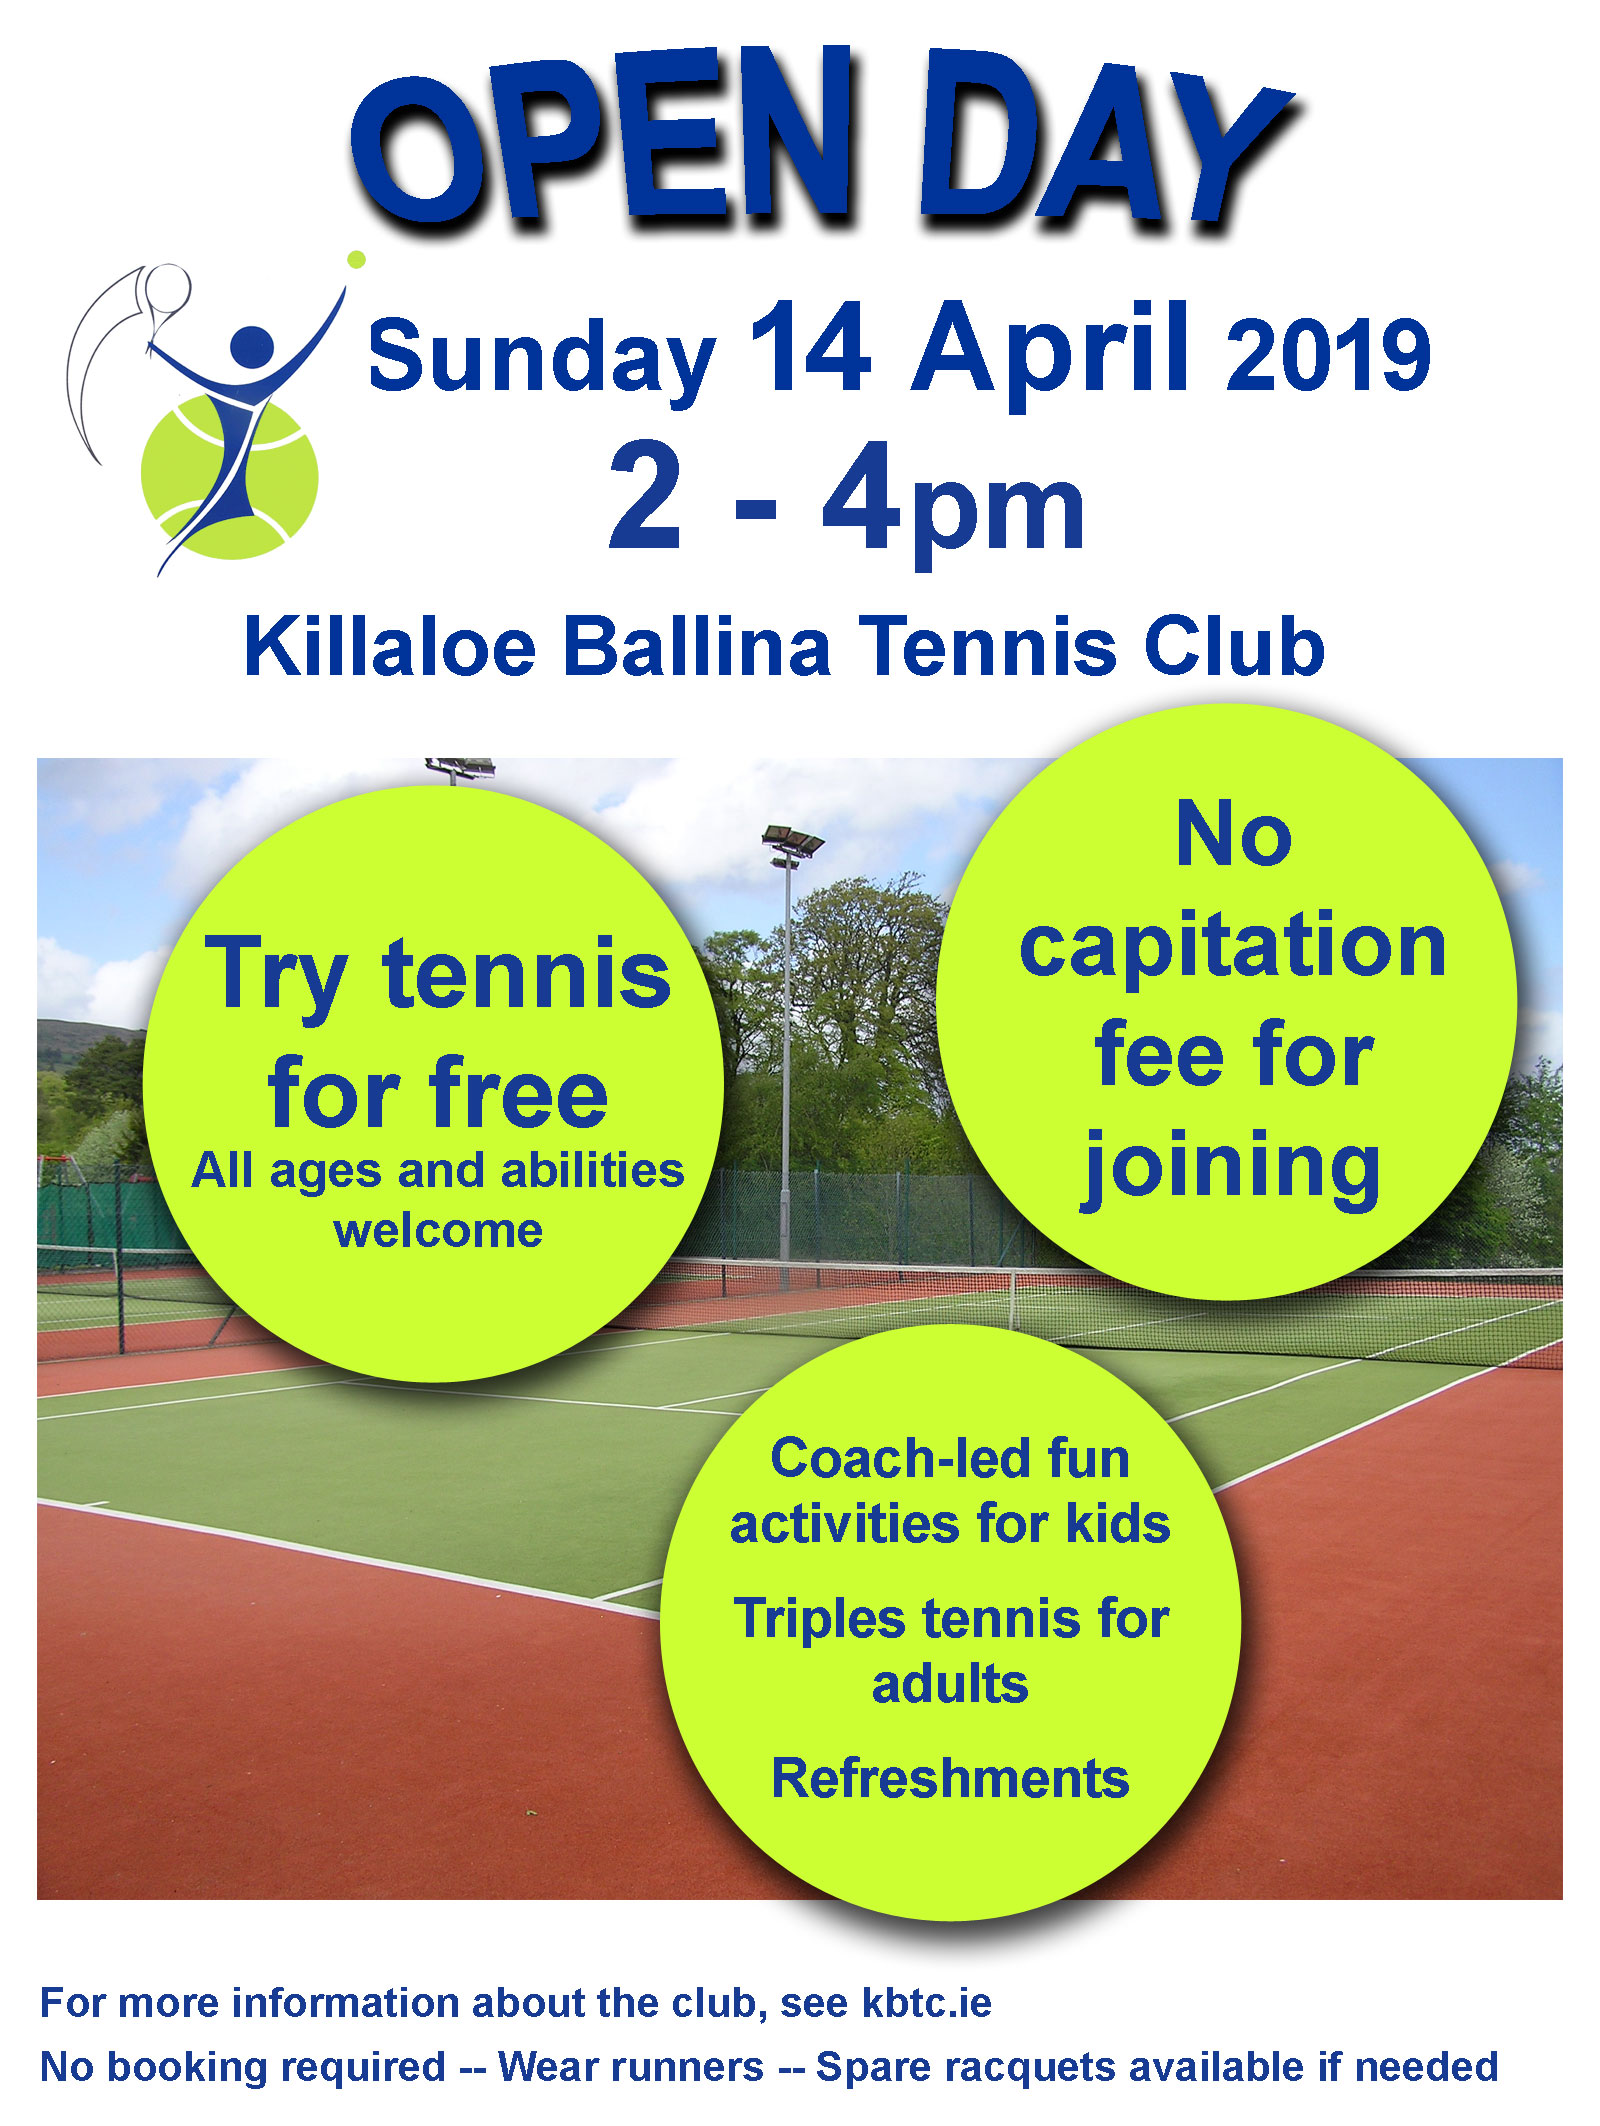 Opendayposter2019 Killaloe Ballina Tennis Club